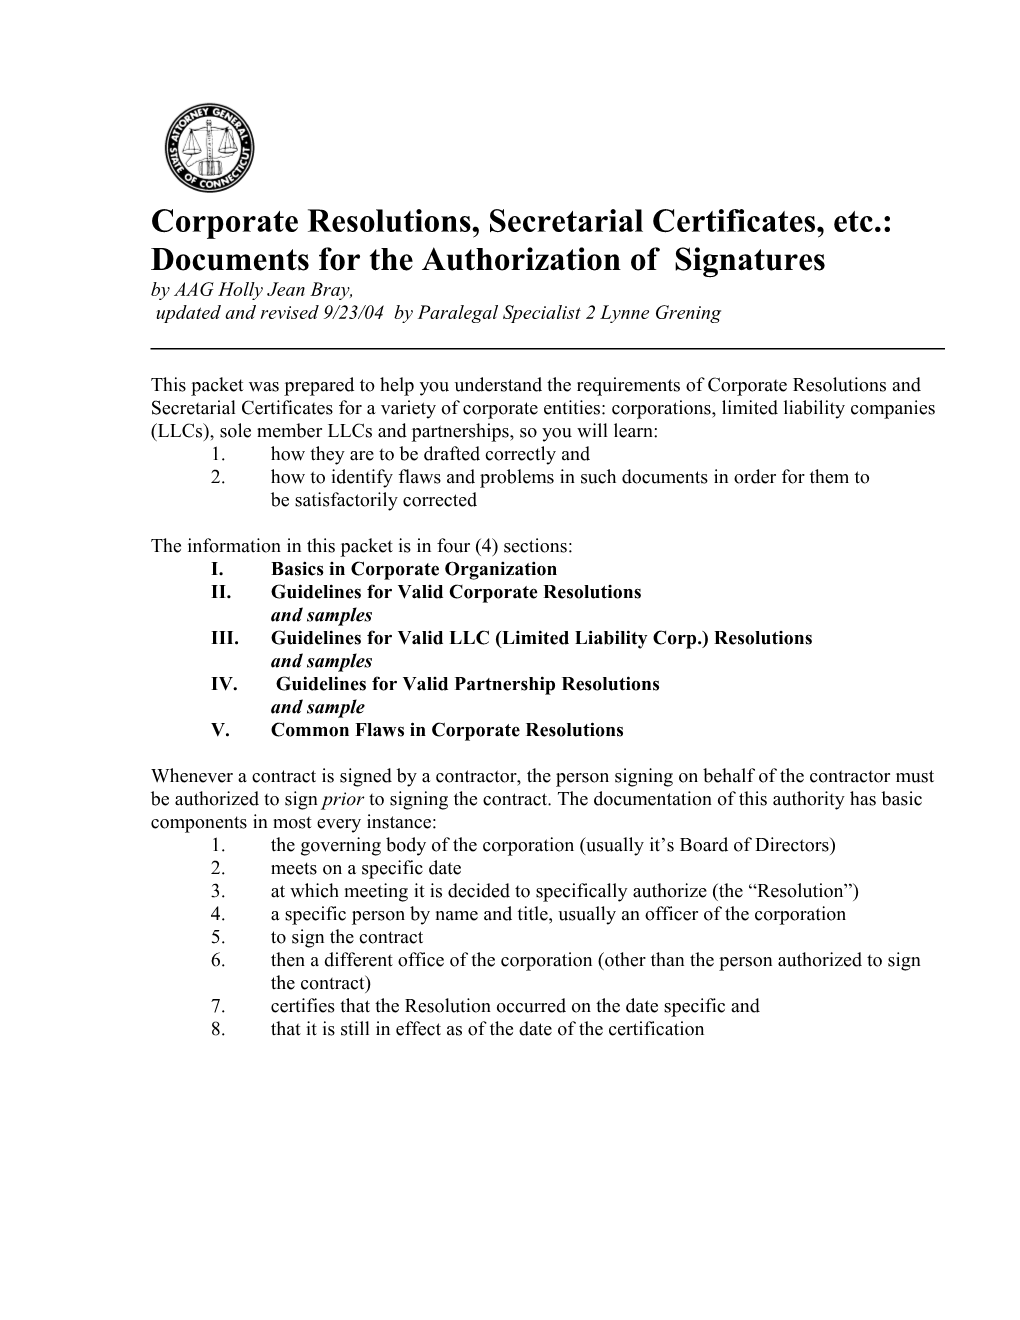 Corporate Resolutions, Secretarial Certificates, Etc